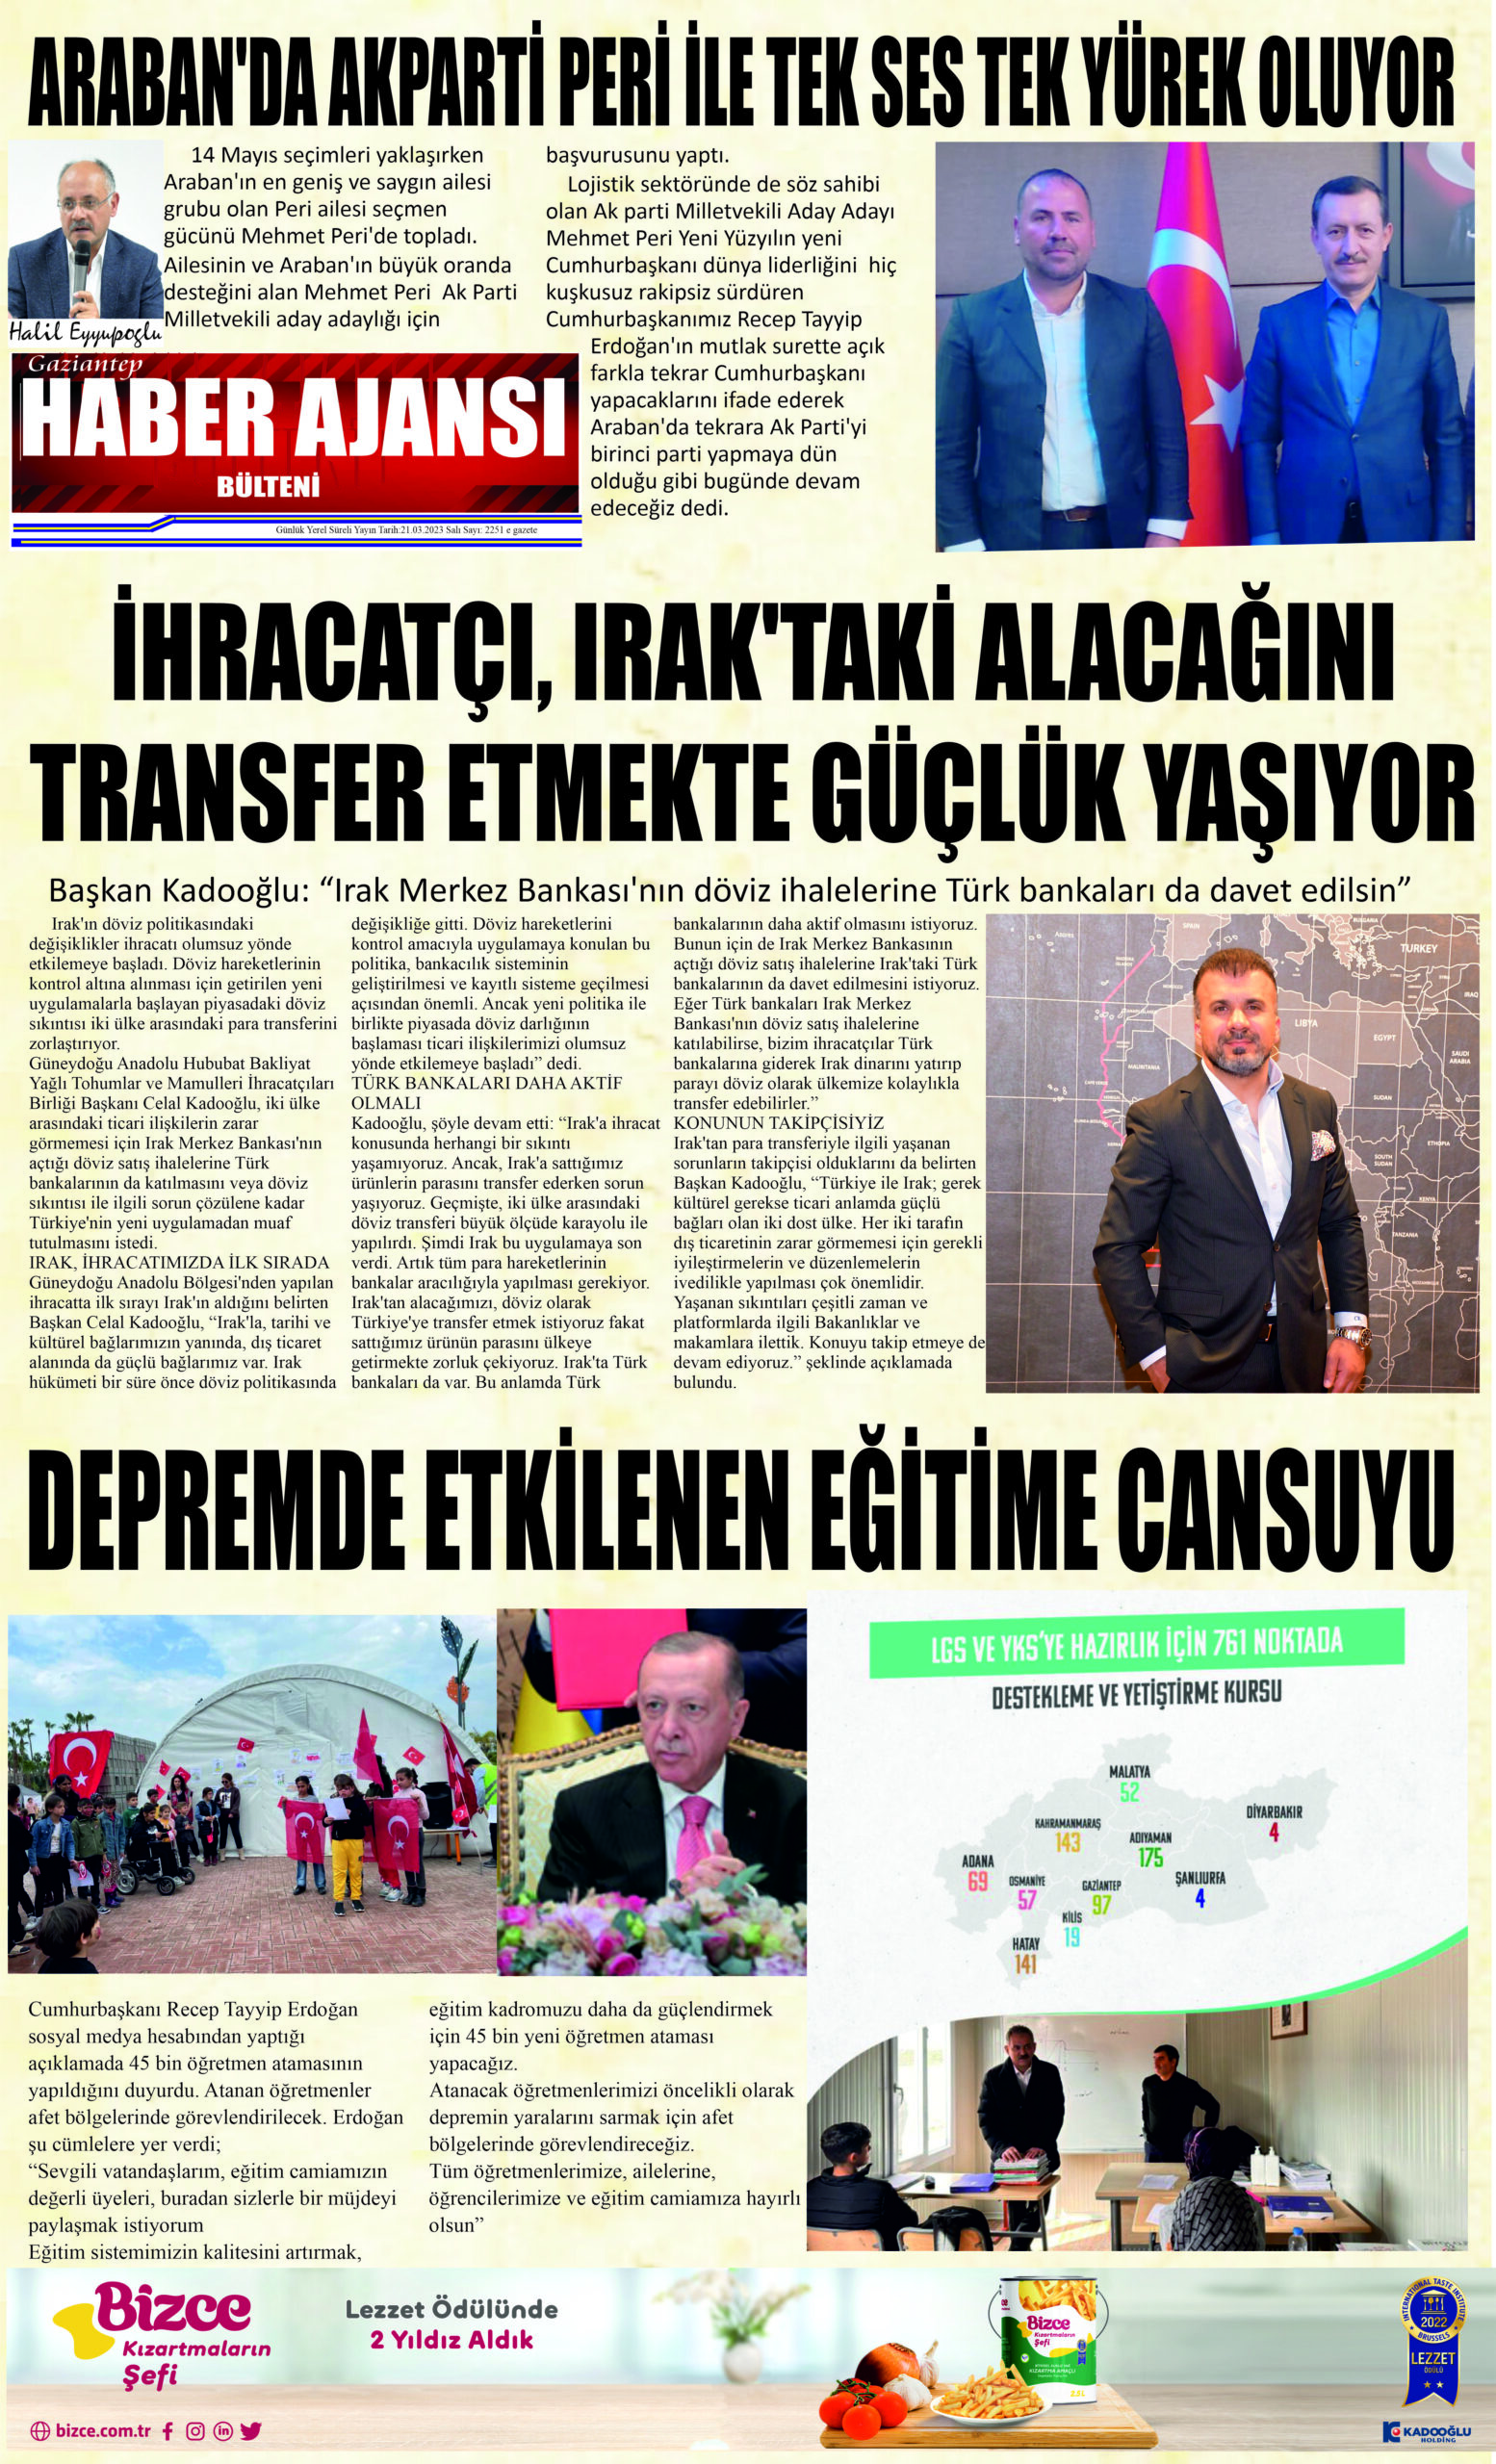 Gaziantep Haber Ajansı Bülteni Salı 21.03.2023 e gazete